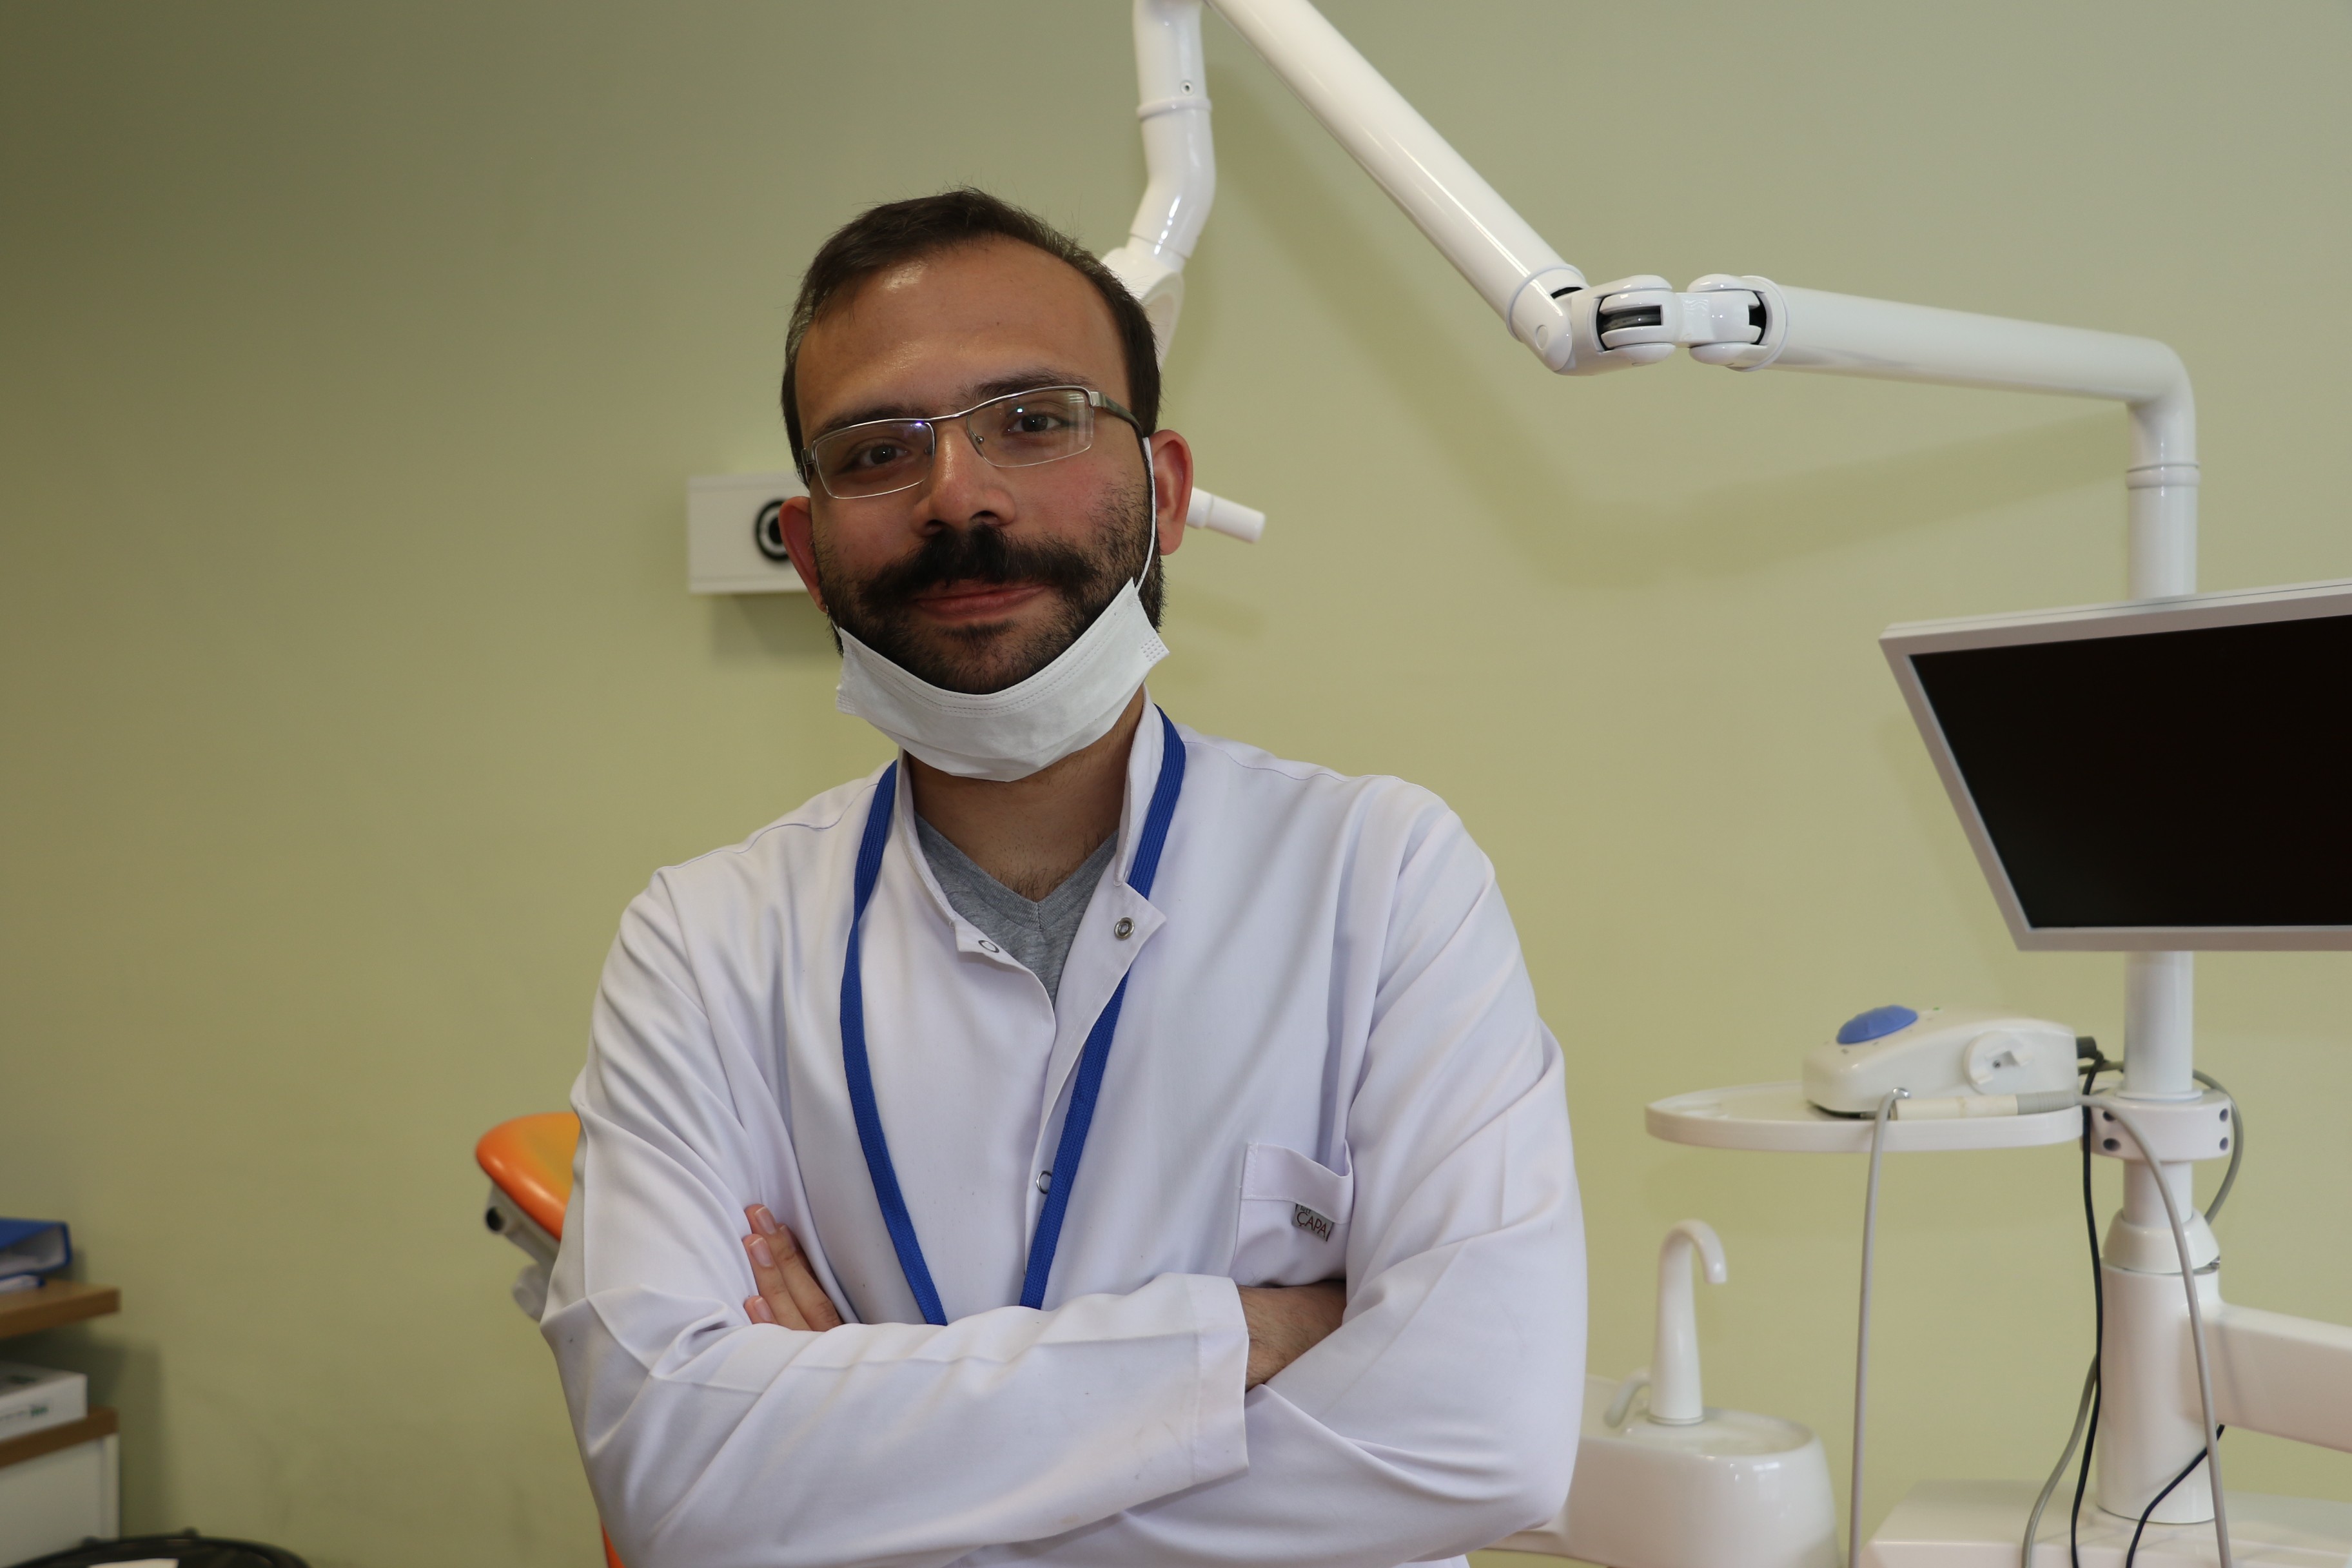 Periodontoloji Uzmanı Dr. Dt. Ali Burak Ayrancı, “Sahurdan sonra mutlaka dişlerinizi fırçalayın”